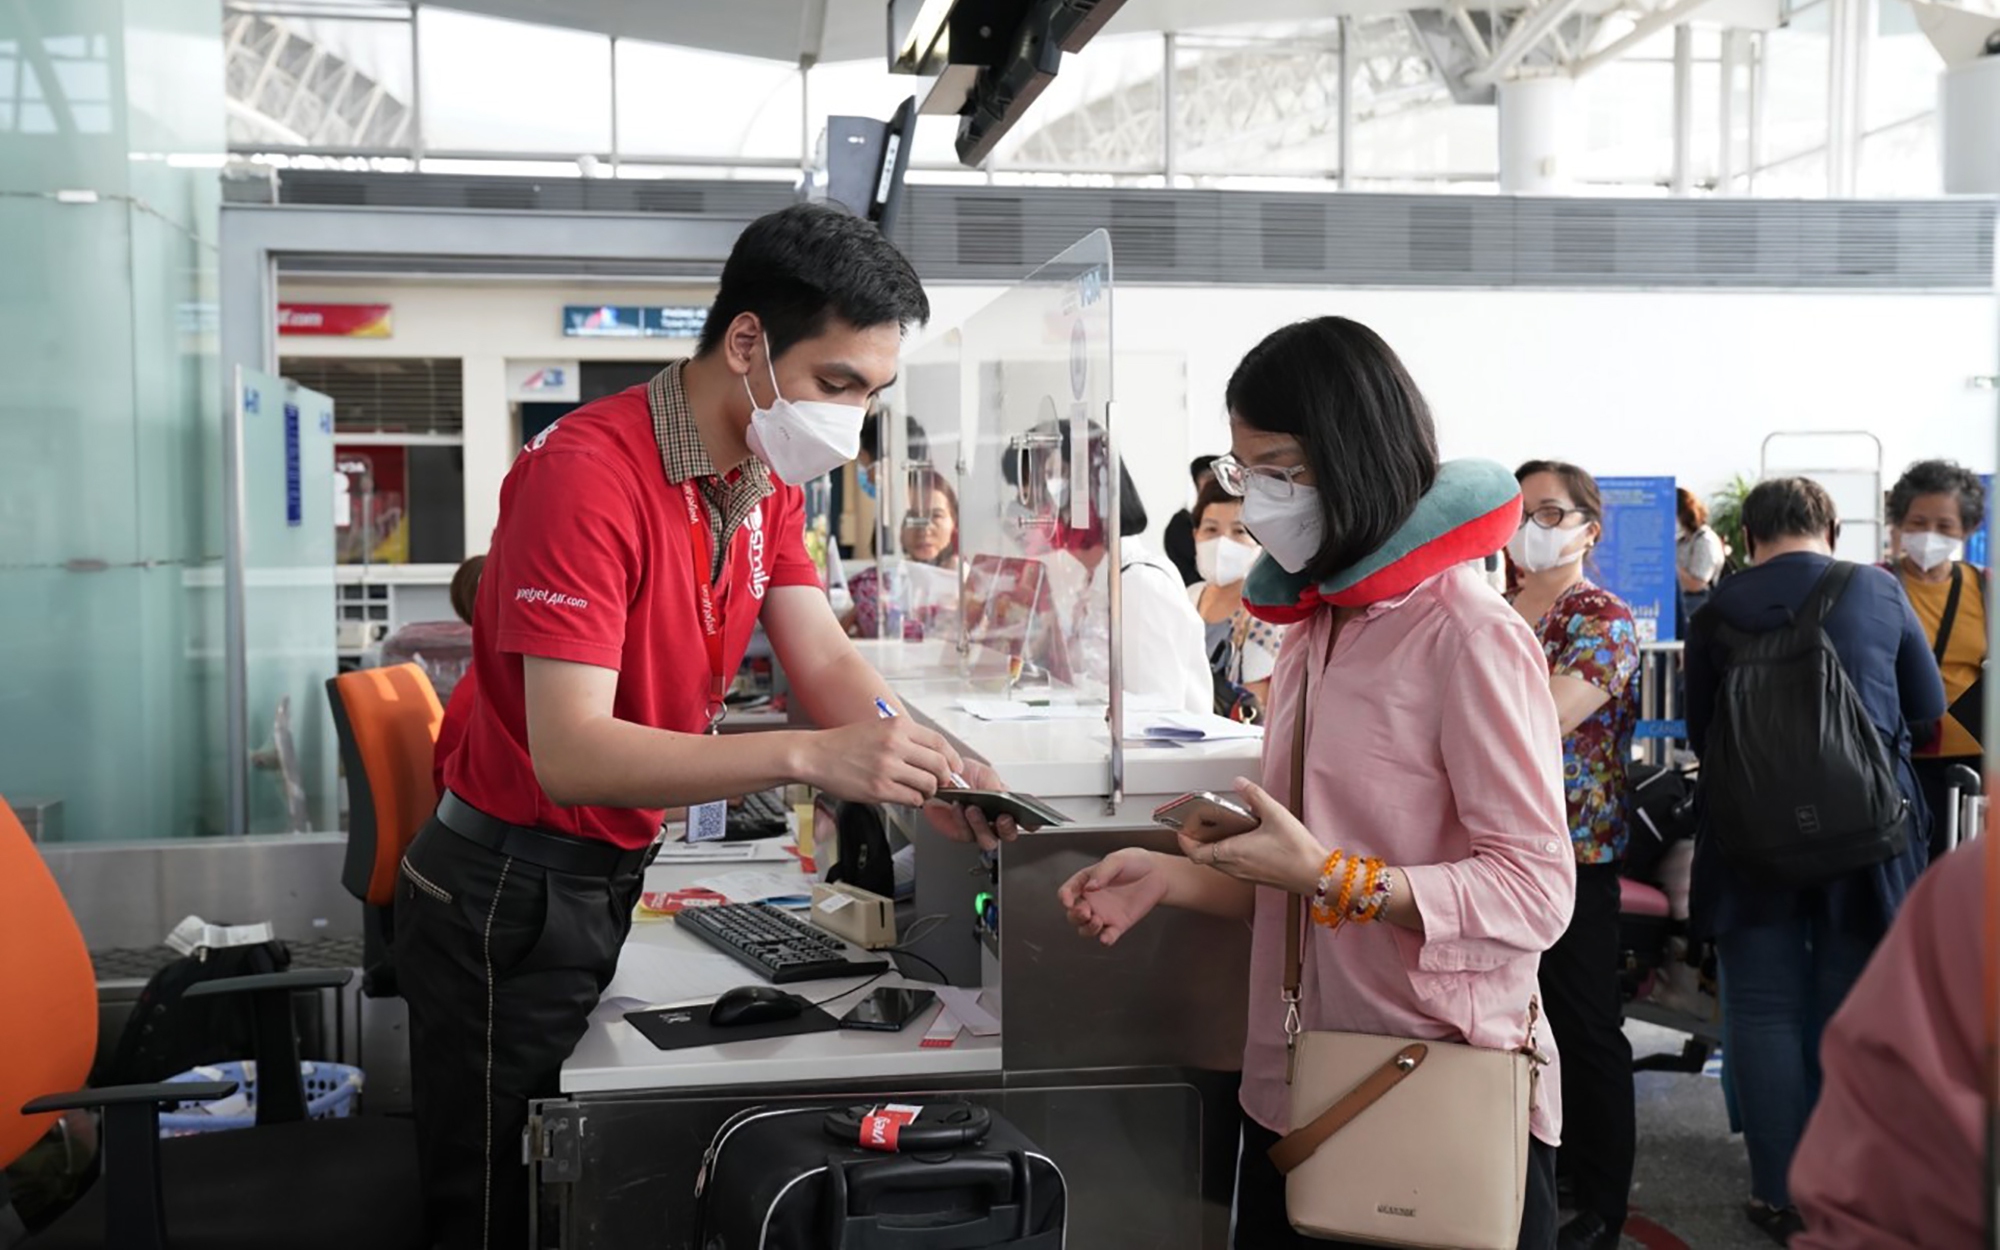 Hàng không phục hồi mạnh mẽ, Vietjet dẫn đầu thị trường vé máy bay